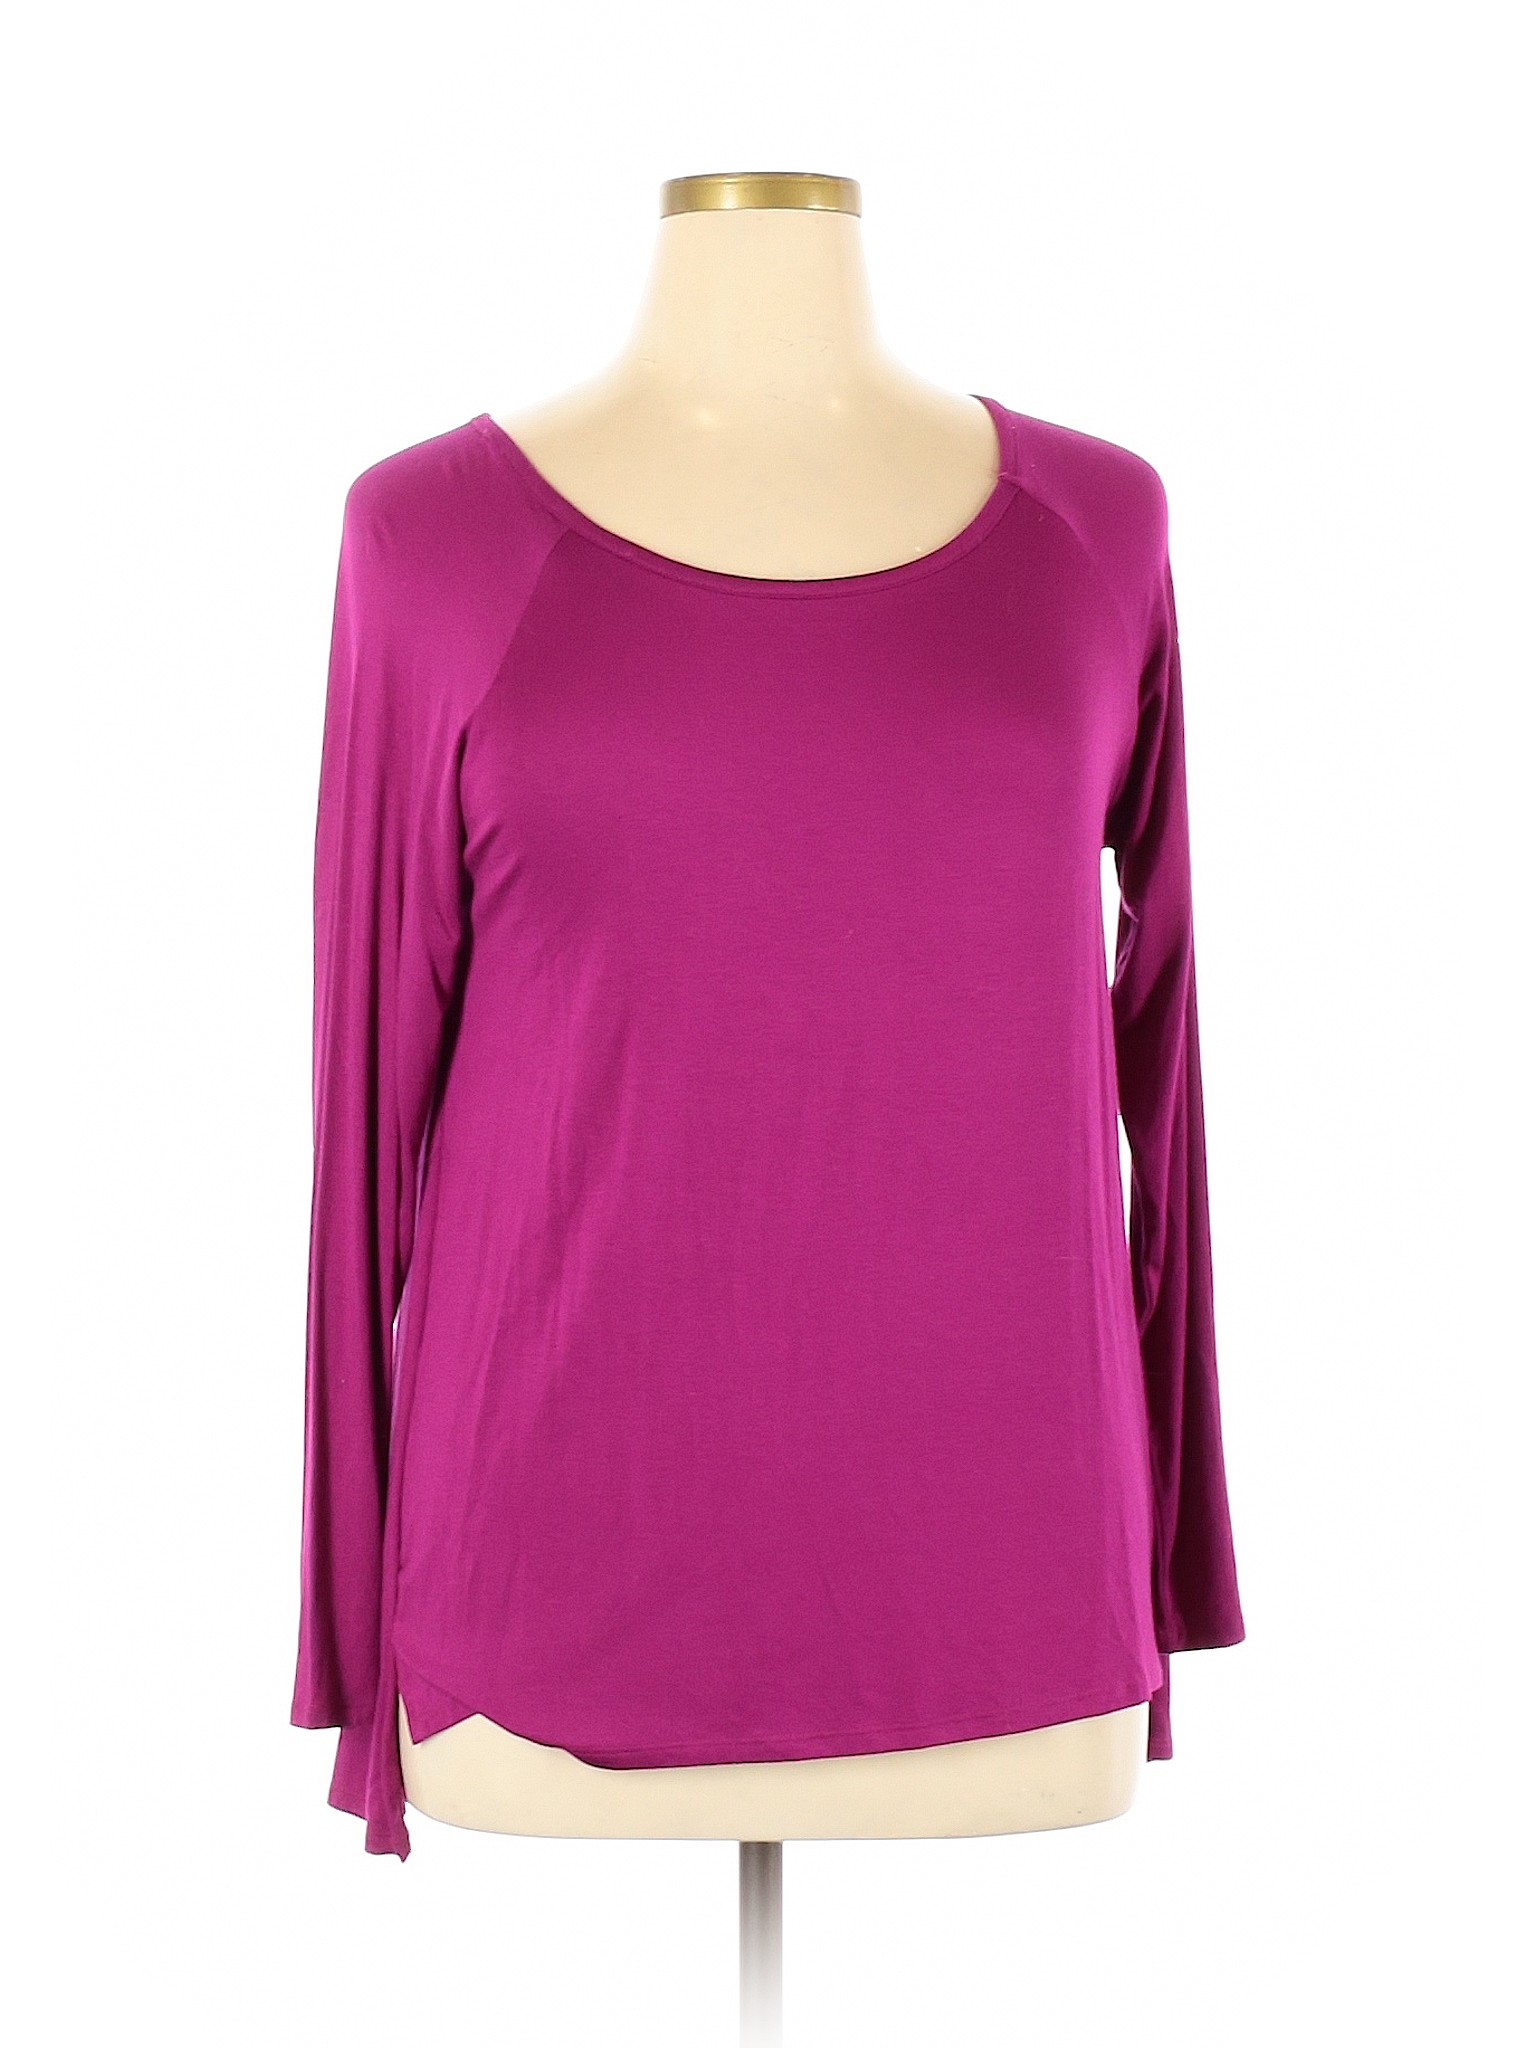 Cable & Gauge Women Purple Long Sleeve Top XL | eBay